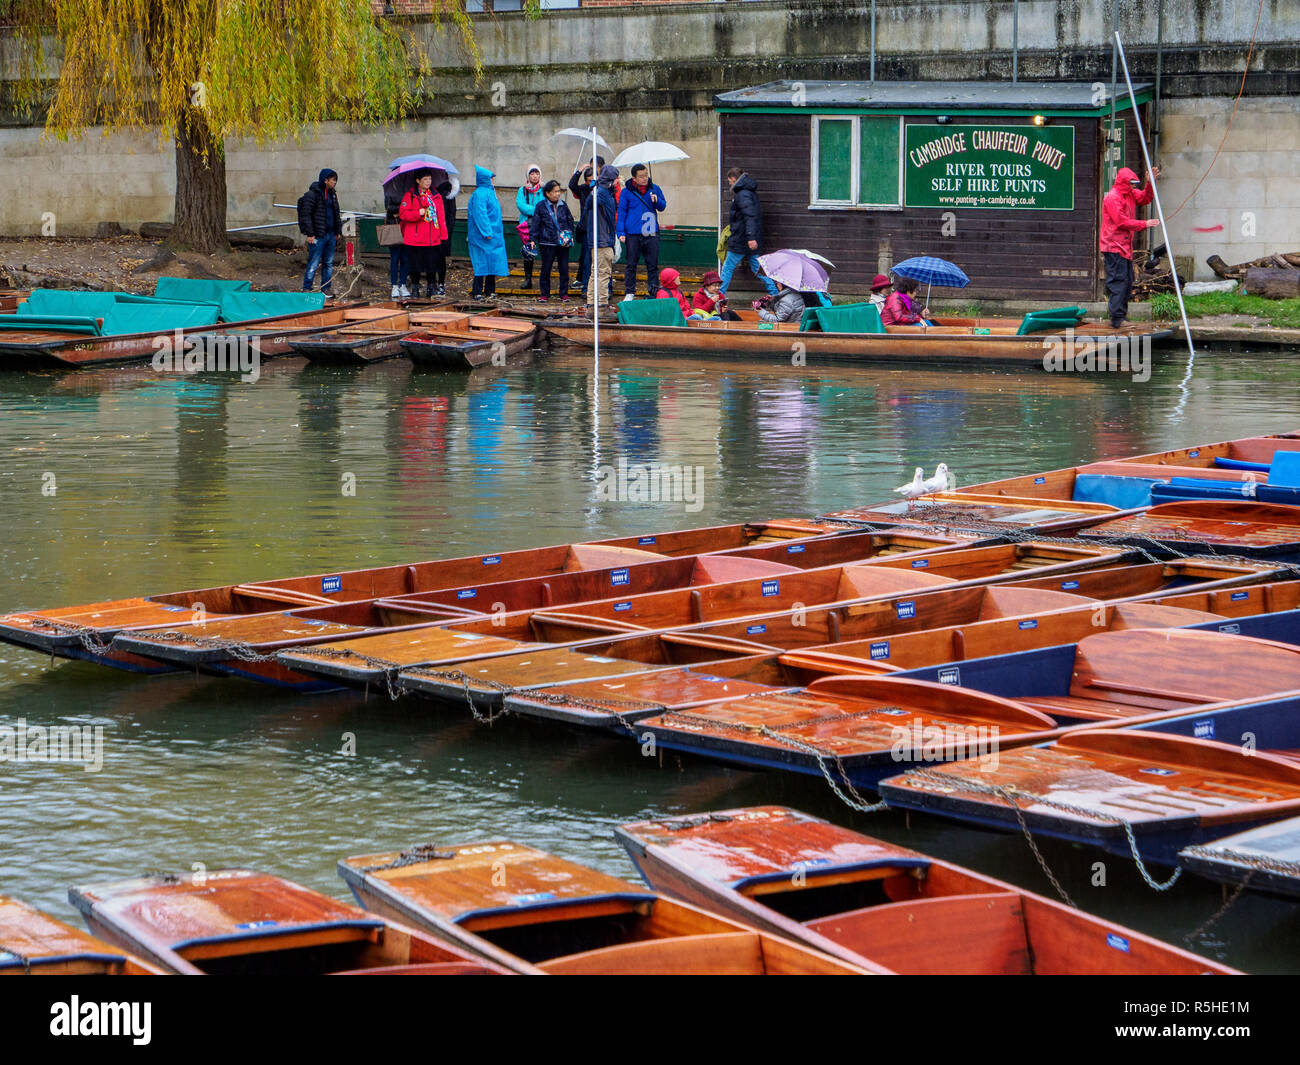 Cambridge - Hiver Tourisme touristes asiatiques d'attente de la pluie pour prendre plates avec chauffeur sur la rivière Cam, dans le centre de Cambridge UK Banque D'Images